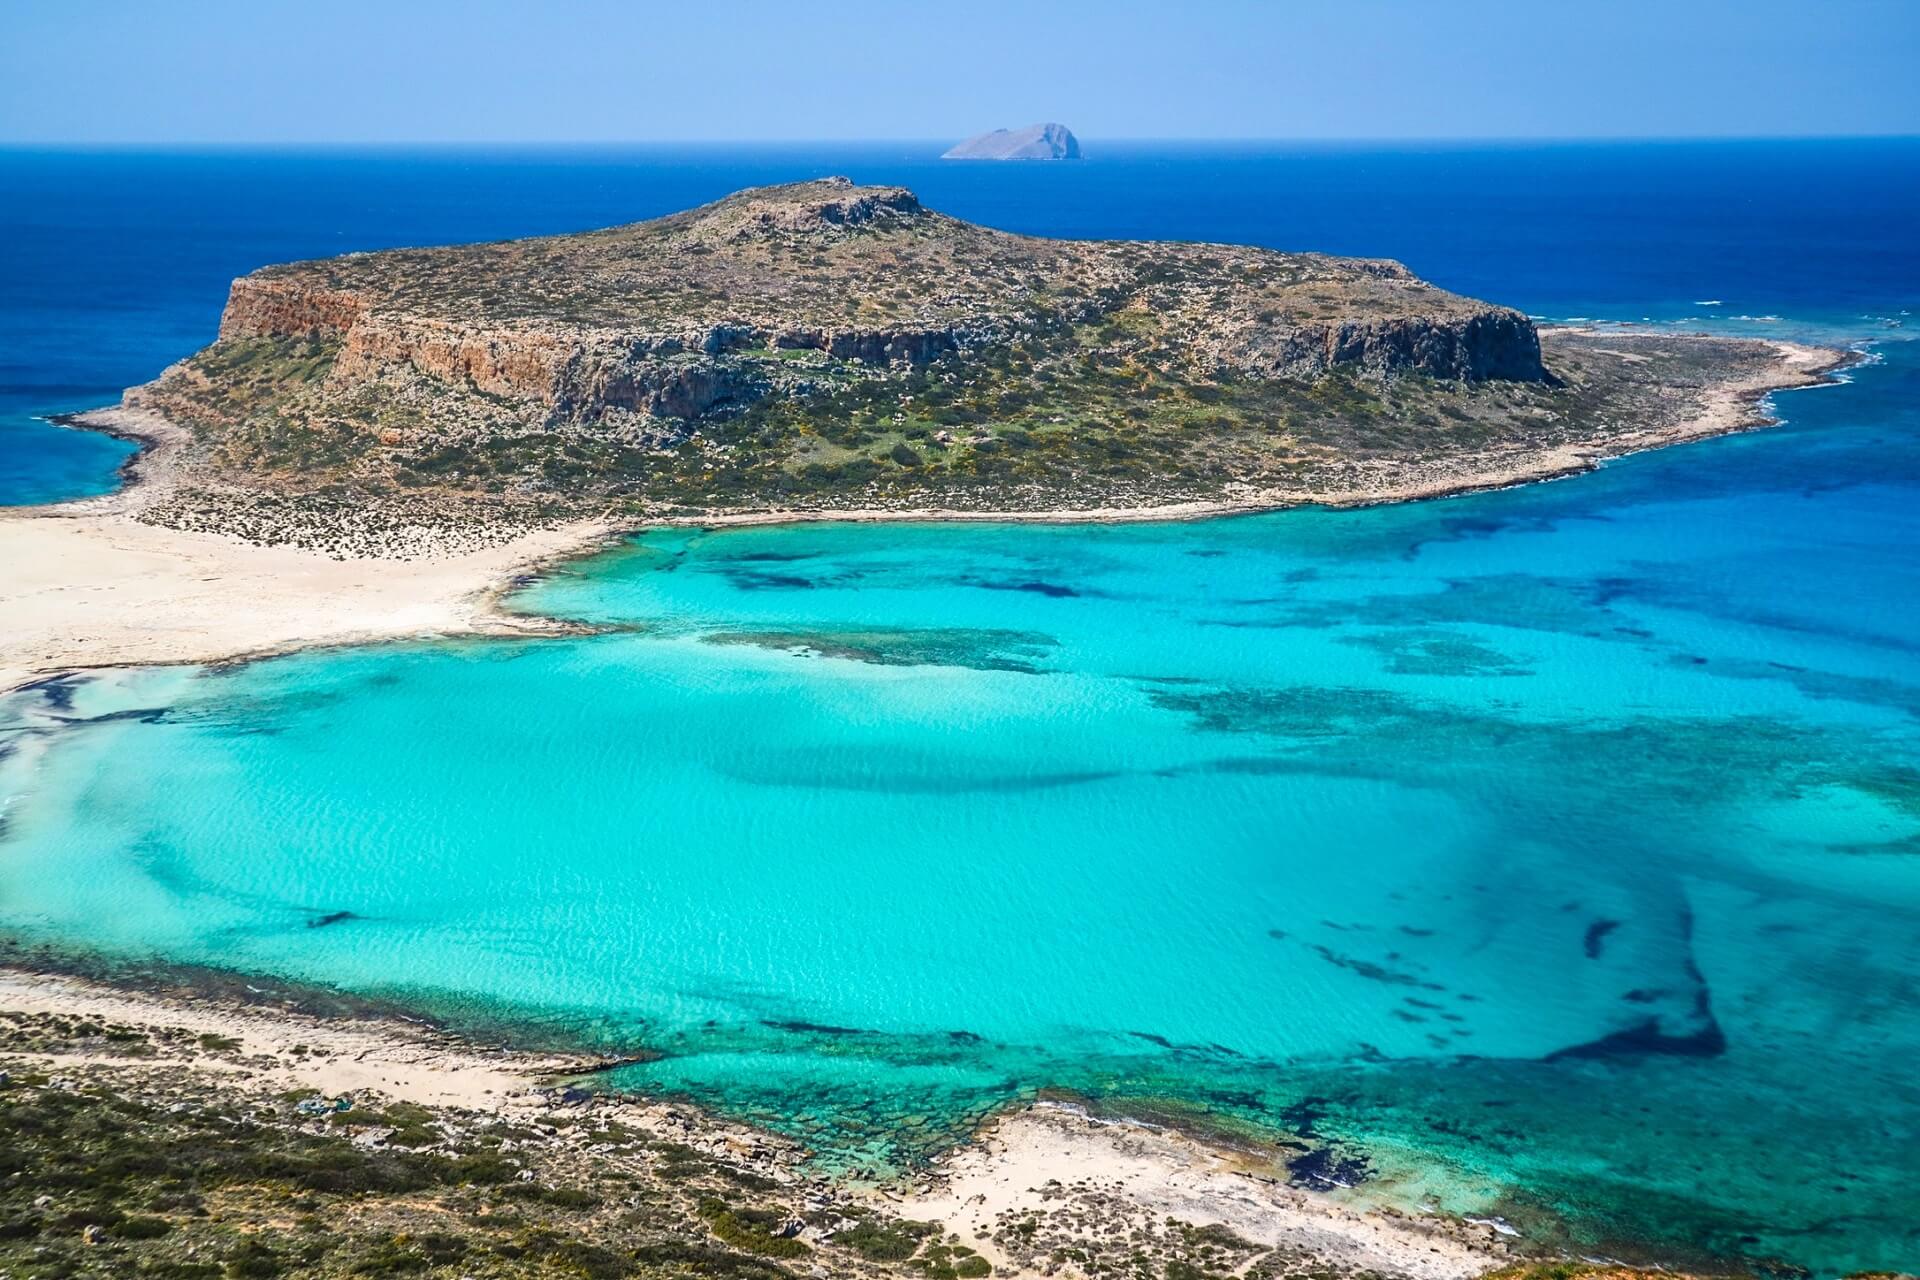 Vacanta de VARA in Creta – doar 158 euro!! (include zbor + cazare 4 nopti)